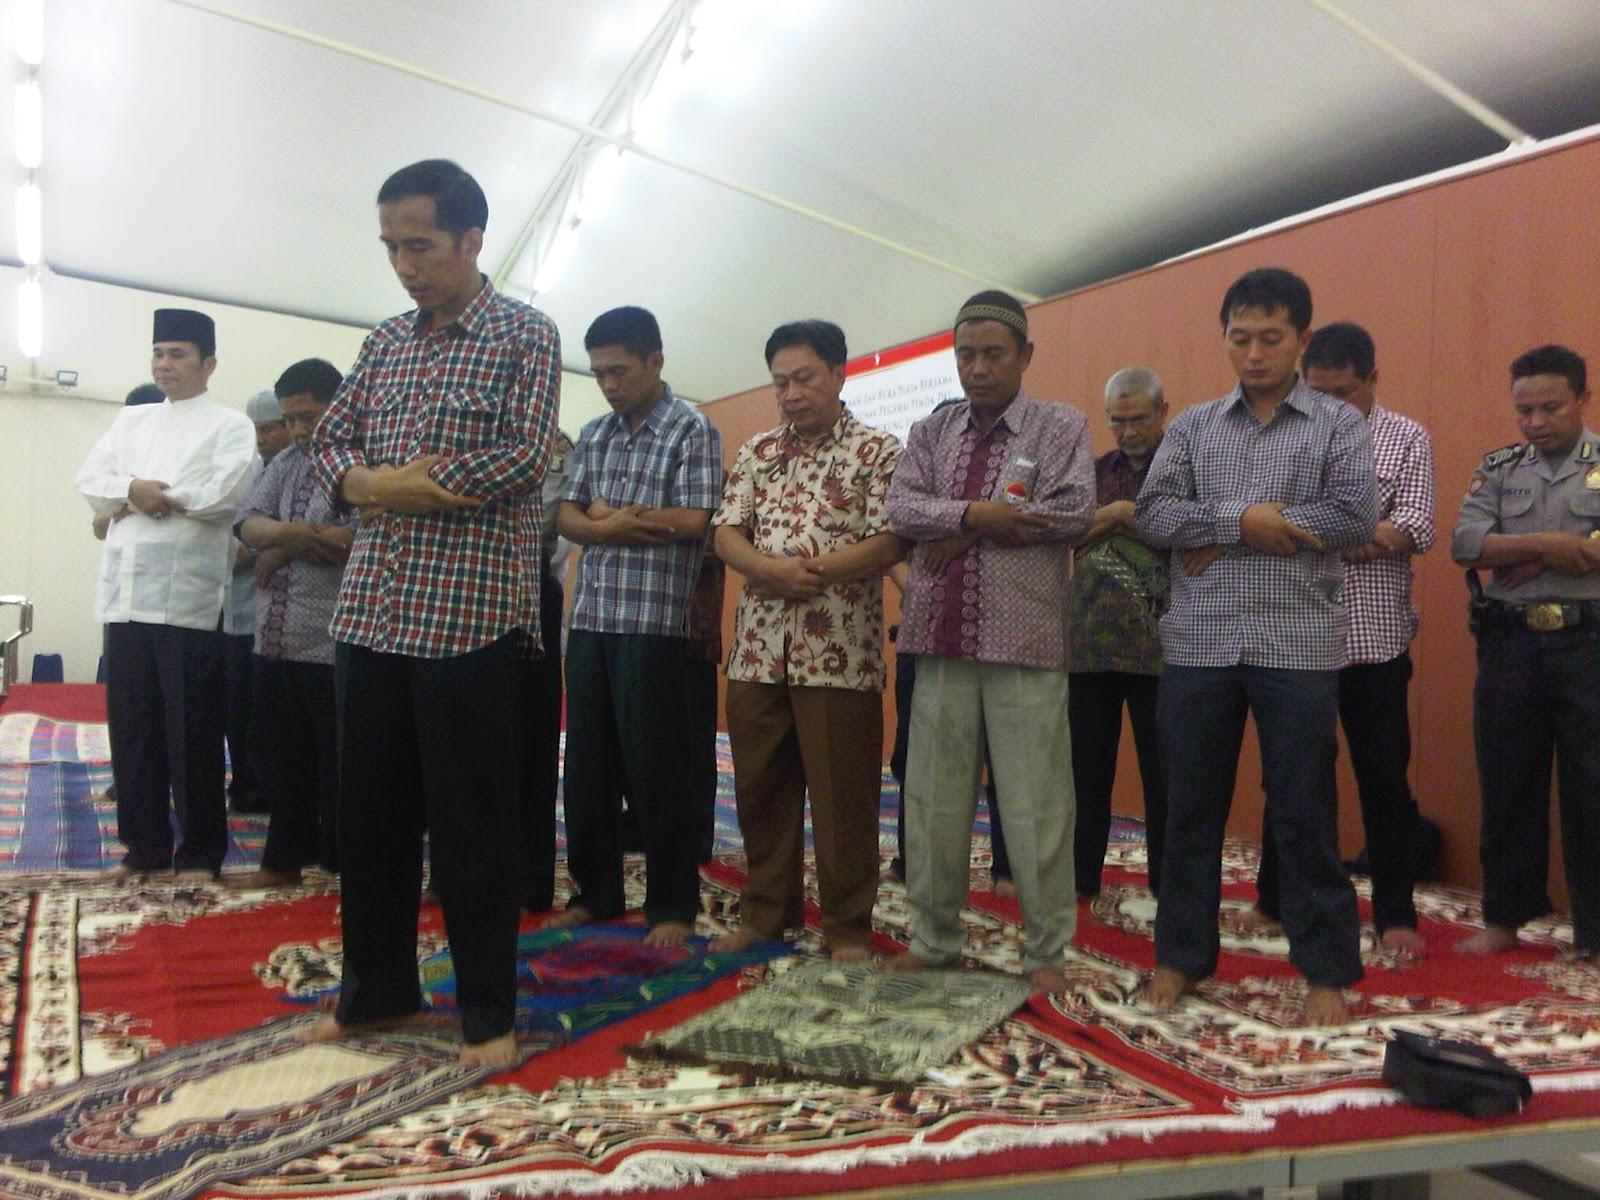  Jleb! Buat Apa Jokowi Pamer Foto Shalat, Kalo Kebijakan PDI-P Anti Islam?